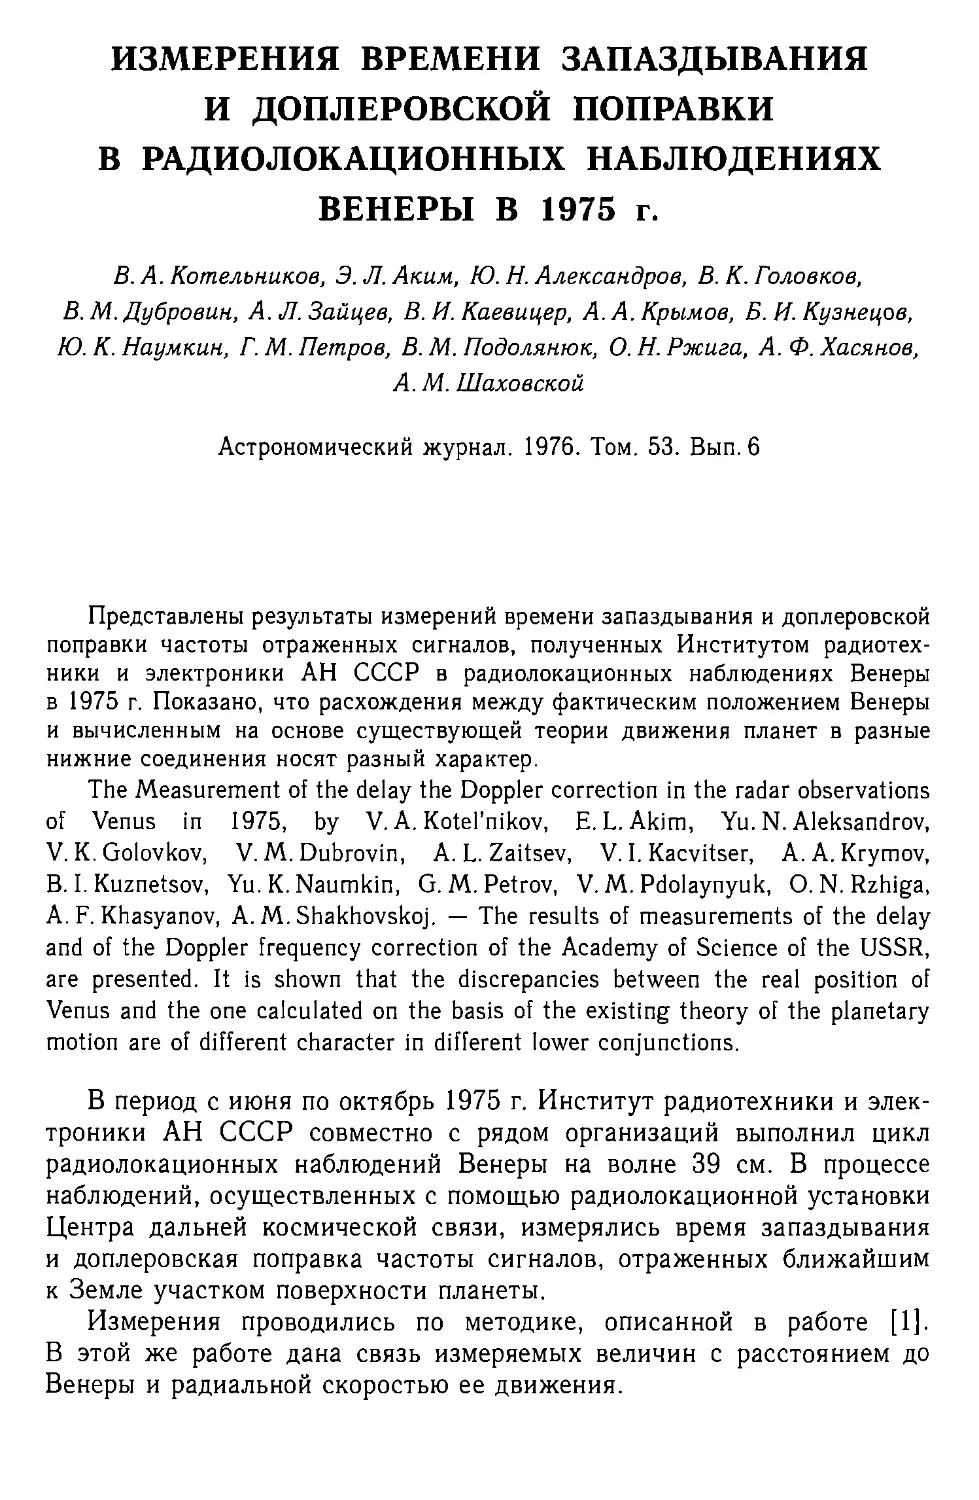 Измерения времени запаздывания и доплеровской поправки в paдиолокационных наблюдениях Венеры в 1975 г.